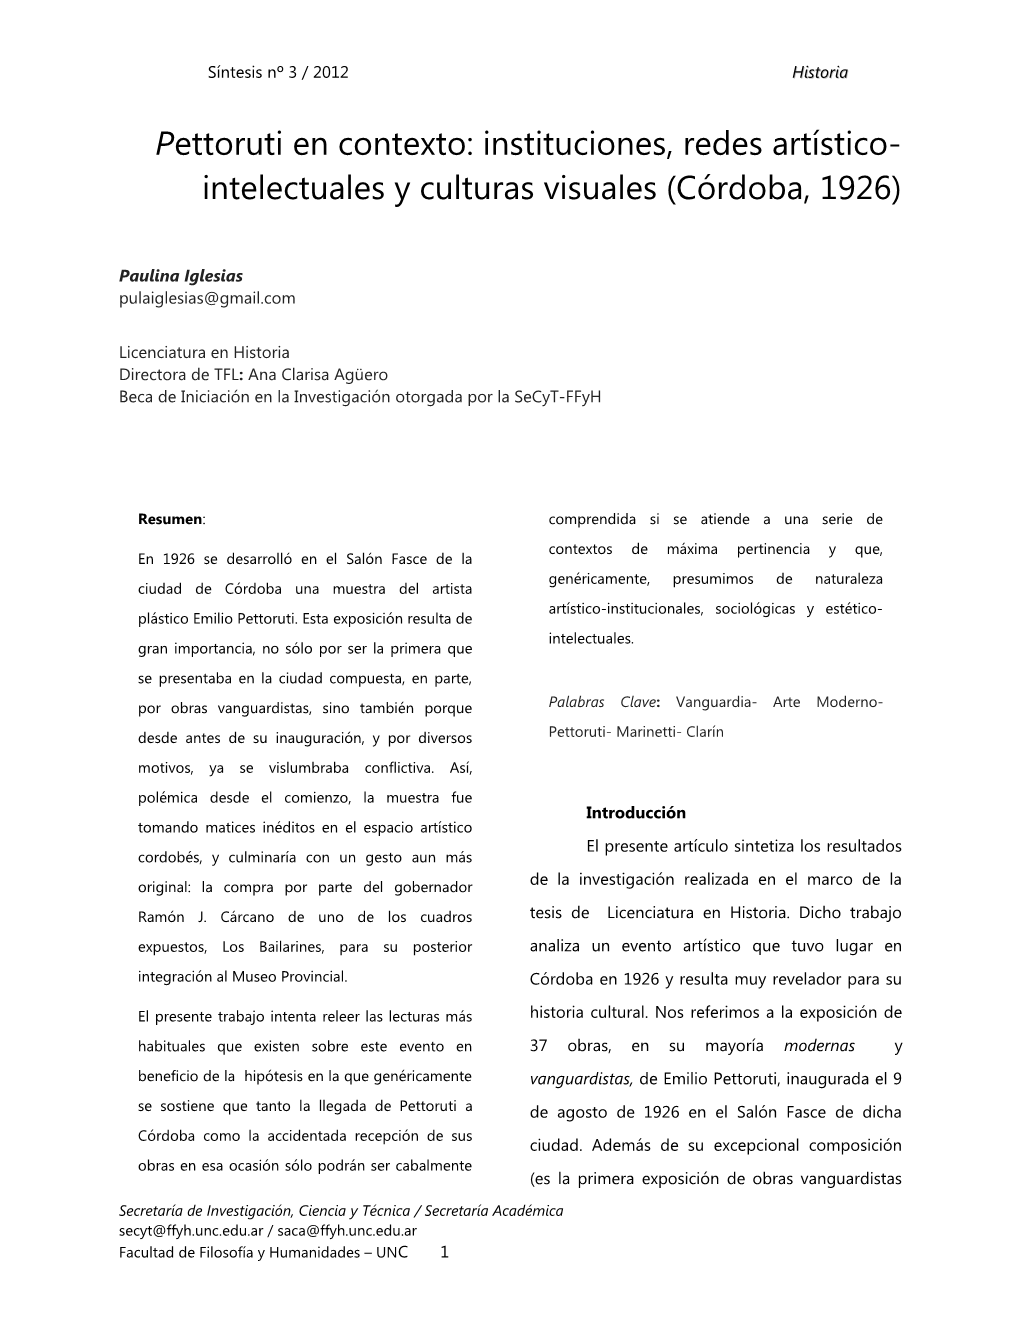 Pettoruti En Contexto: Instituciones, Redes Artístico- Intelectuales Y Culturas Visuales (Córdoba, 1926)